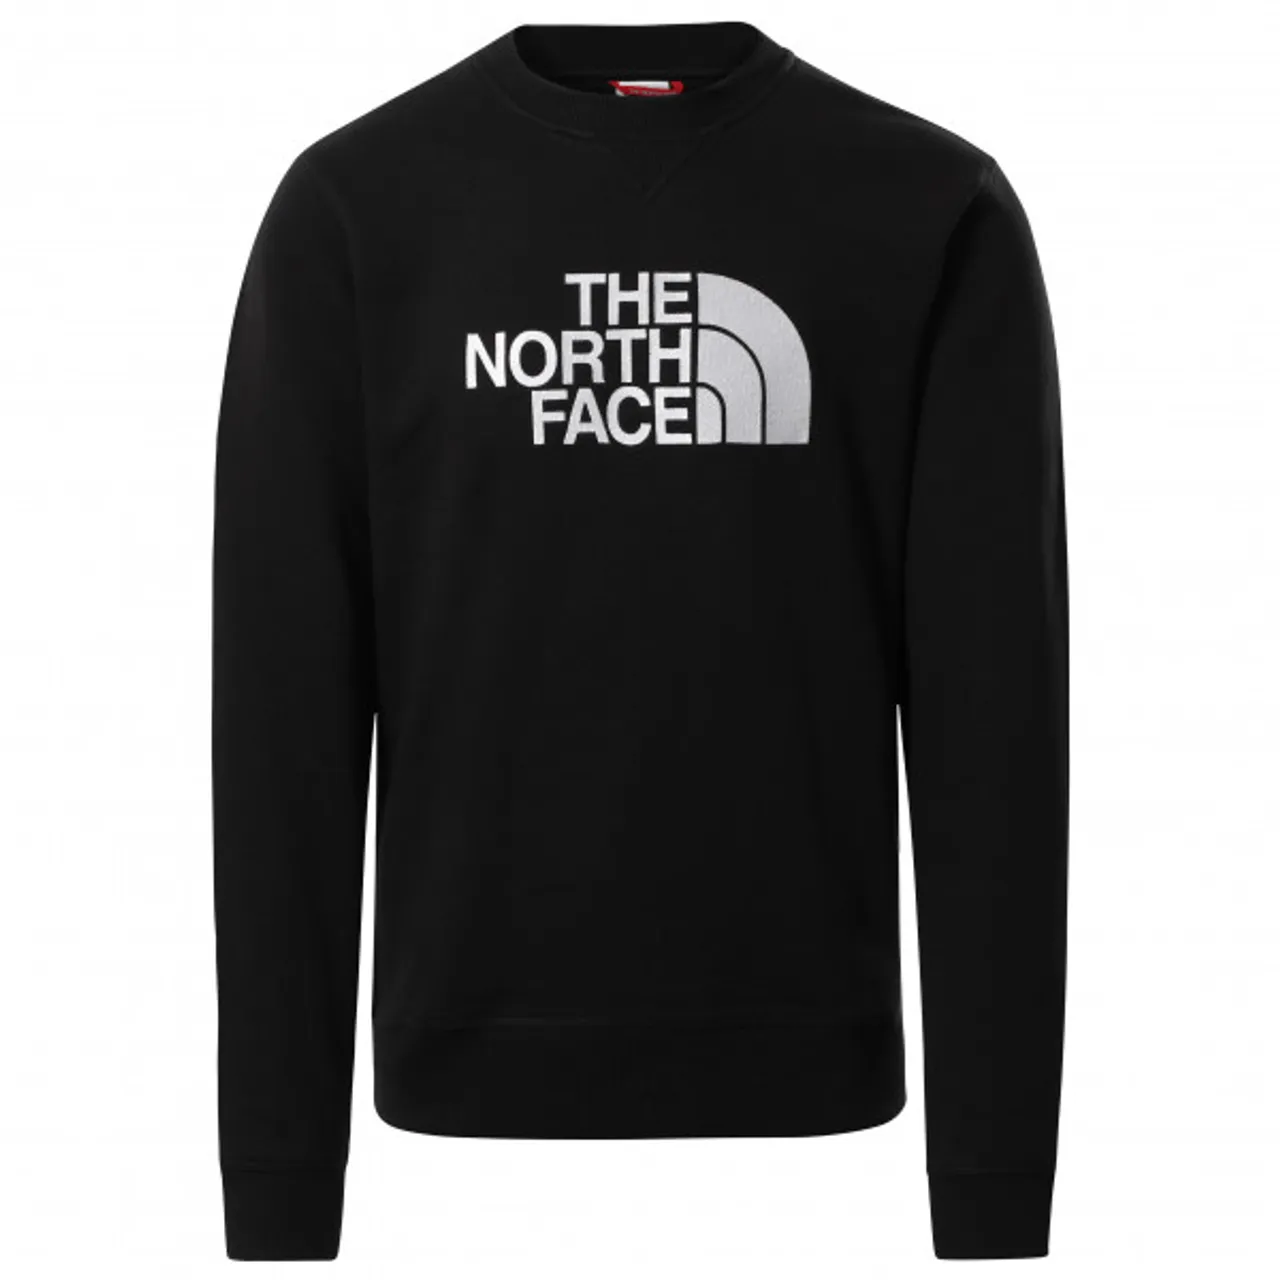 The North Face - Drew Peak Crew - Pullover